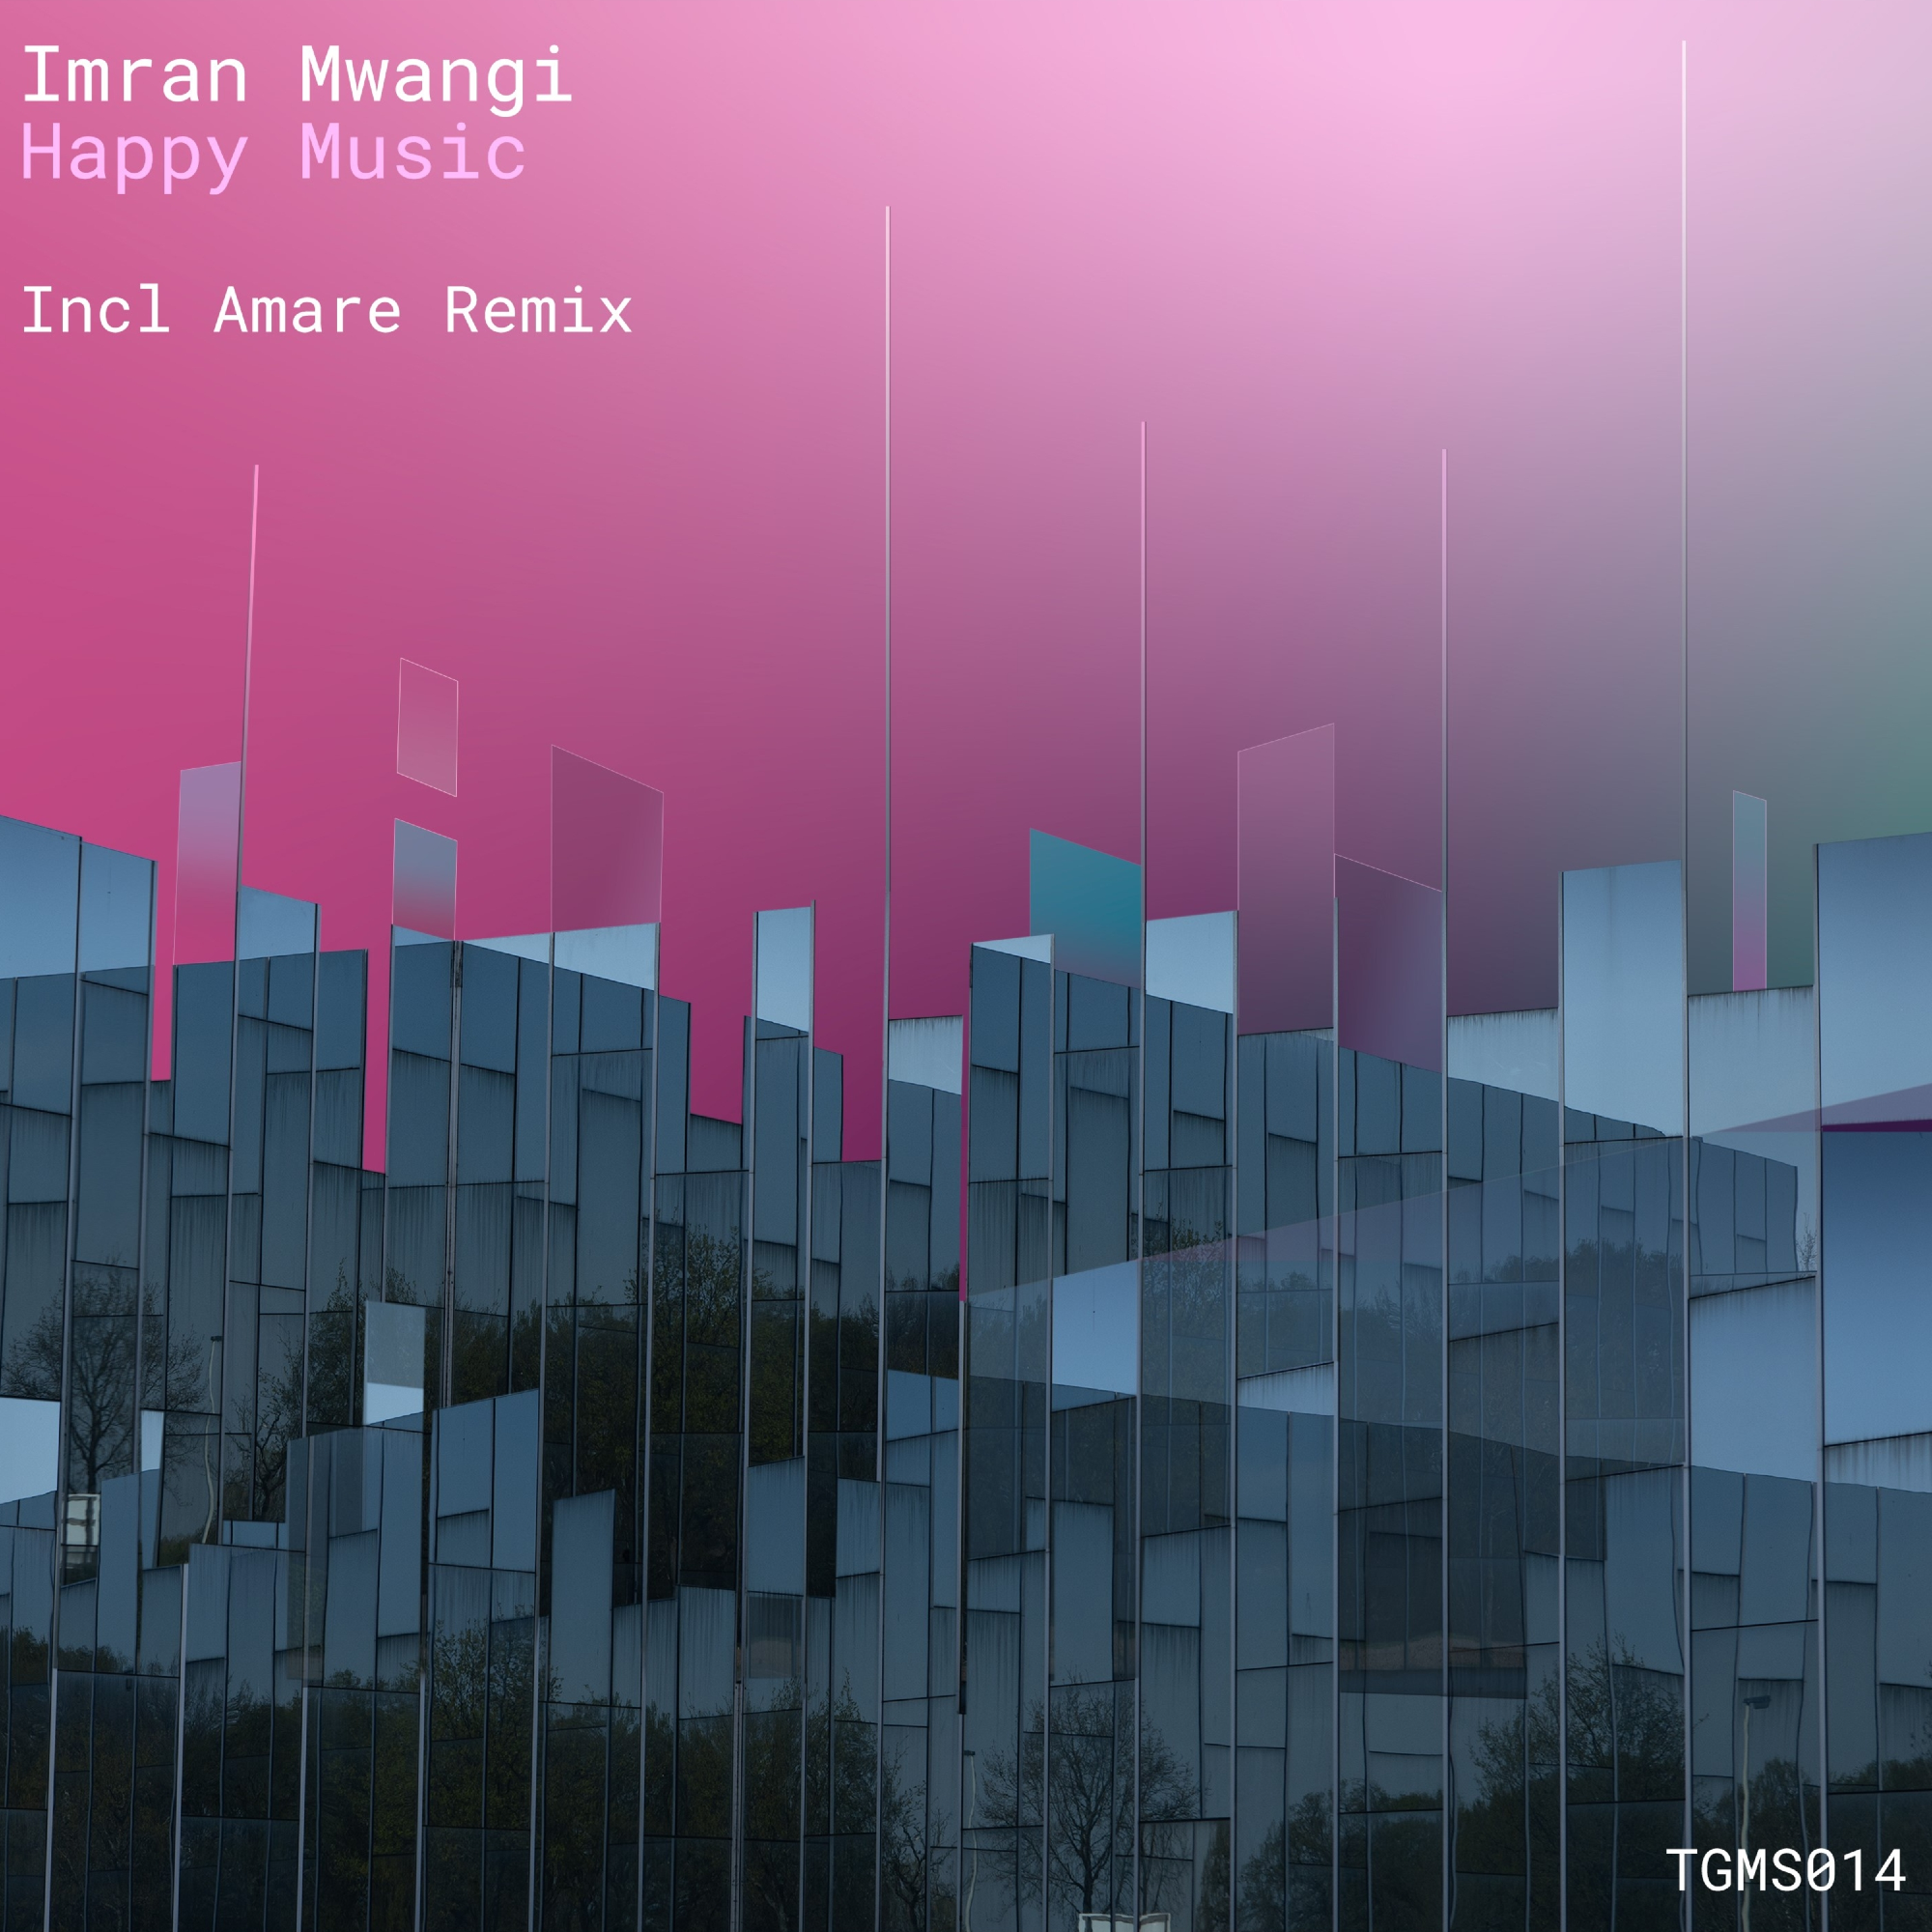 TGMS014 Imran Mwangi - Happy Music (inc Amare remix)